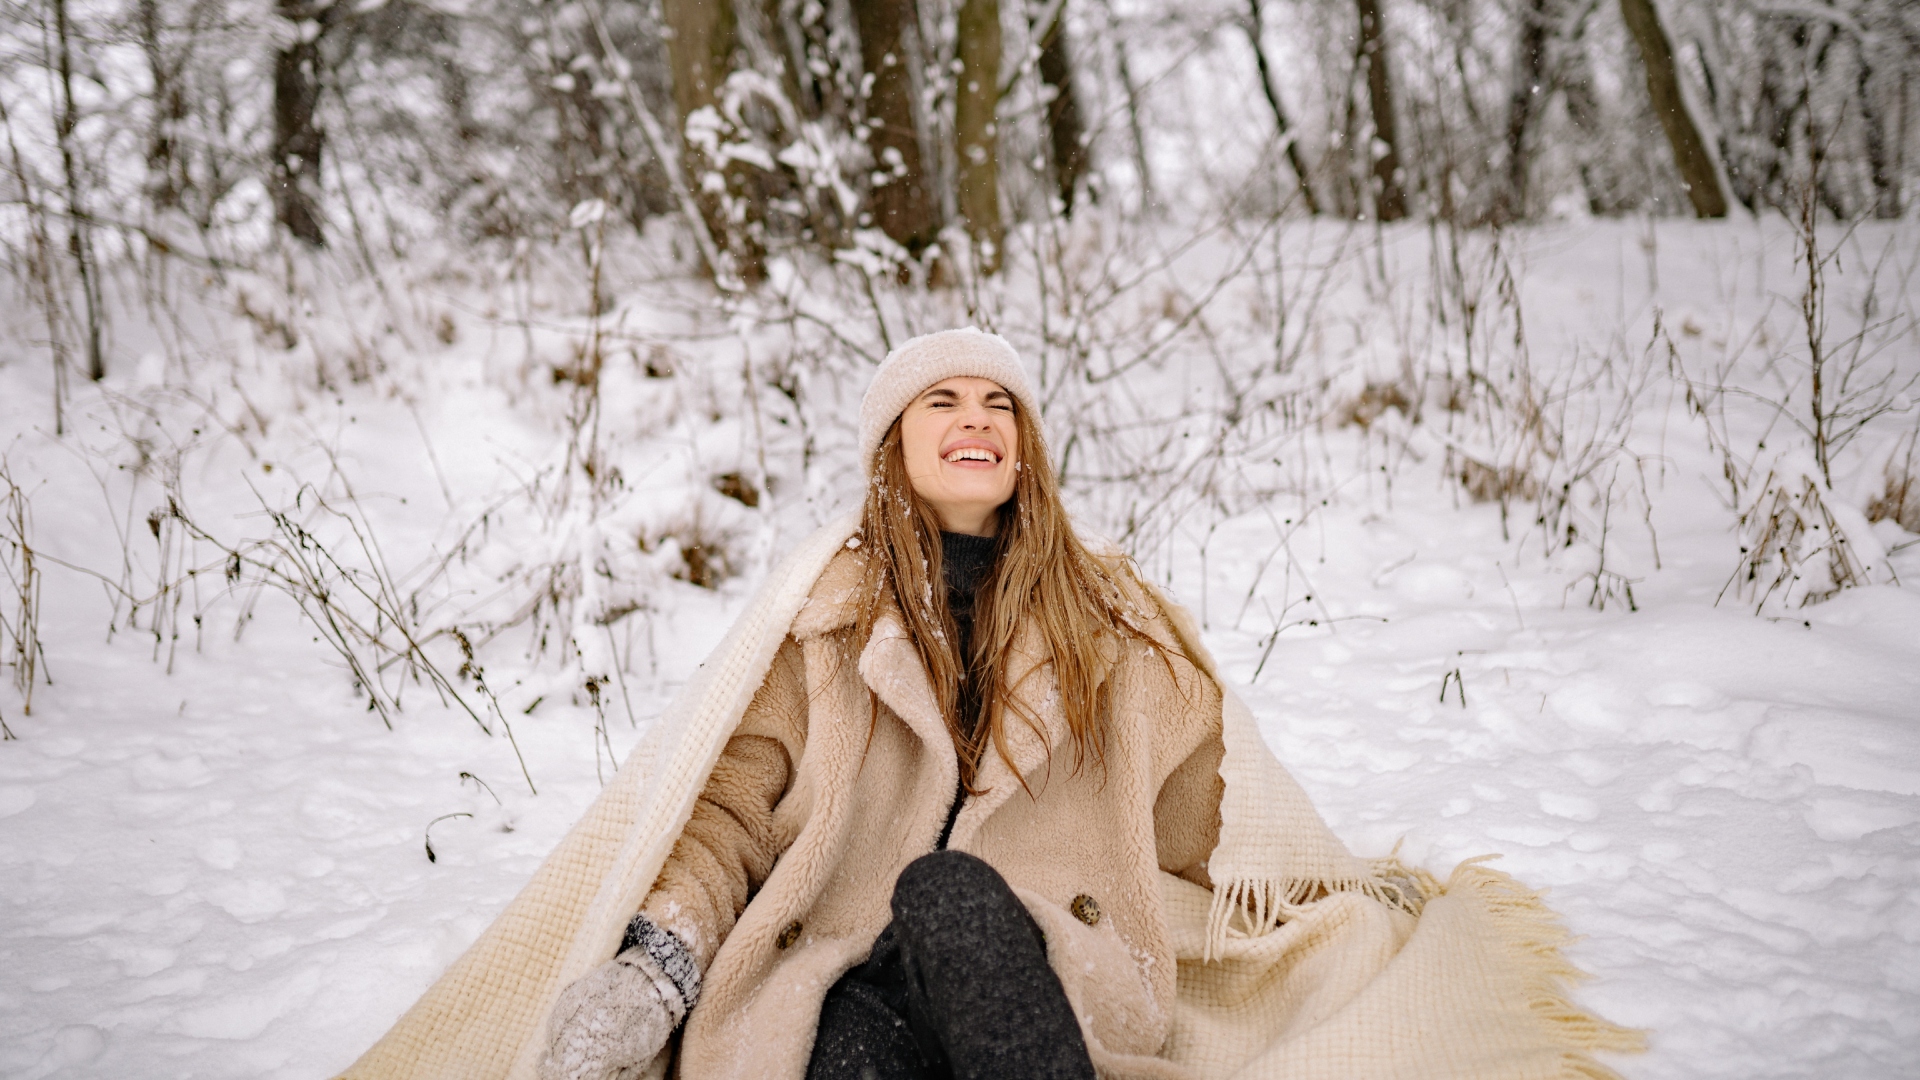 Žena sa smeje v snehu